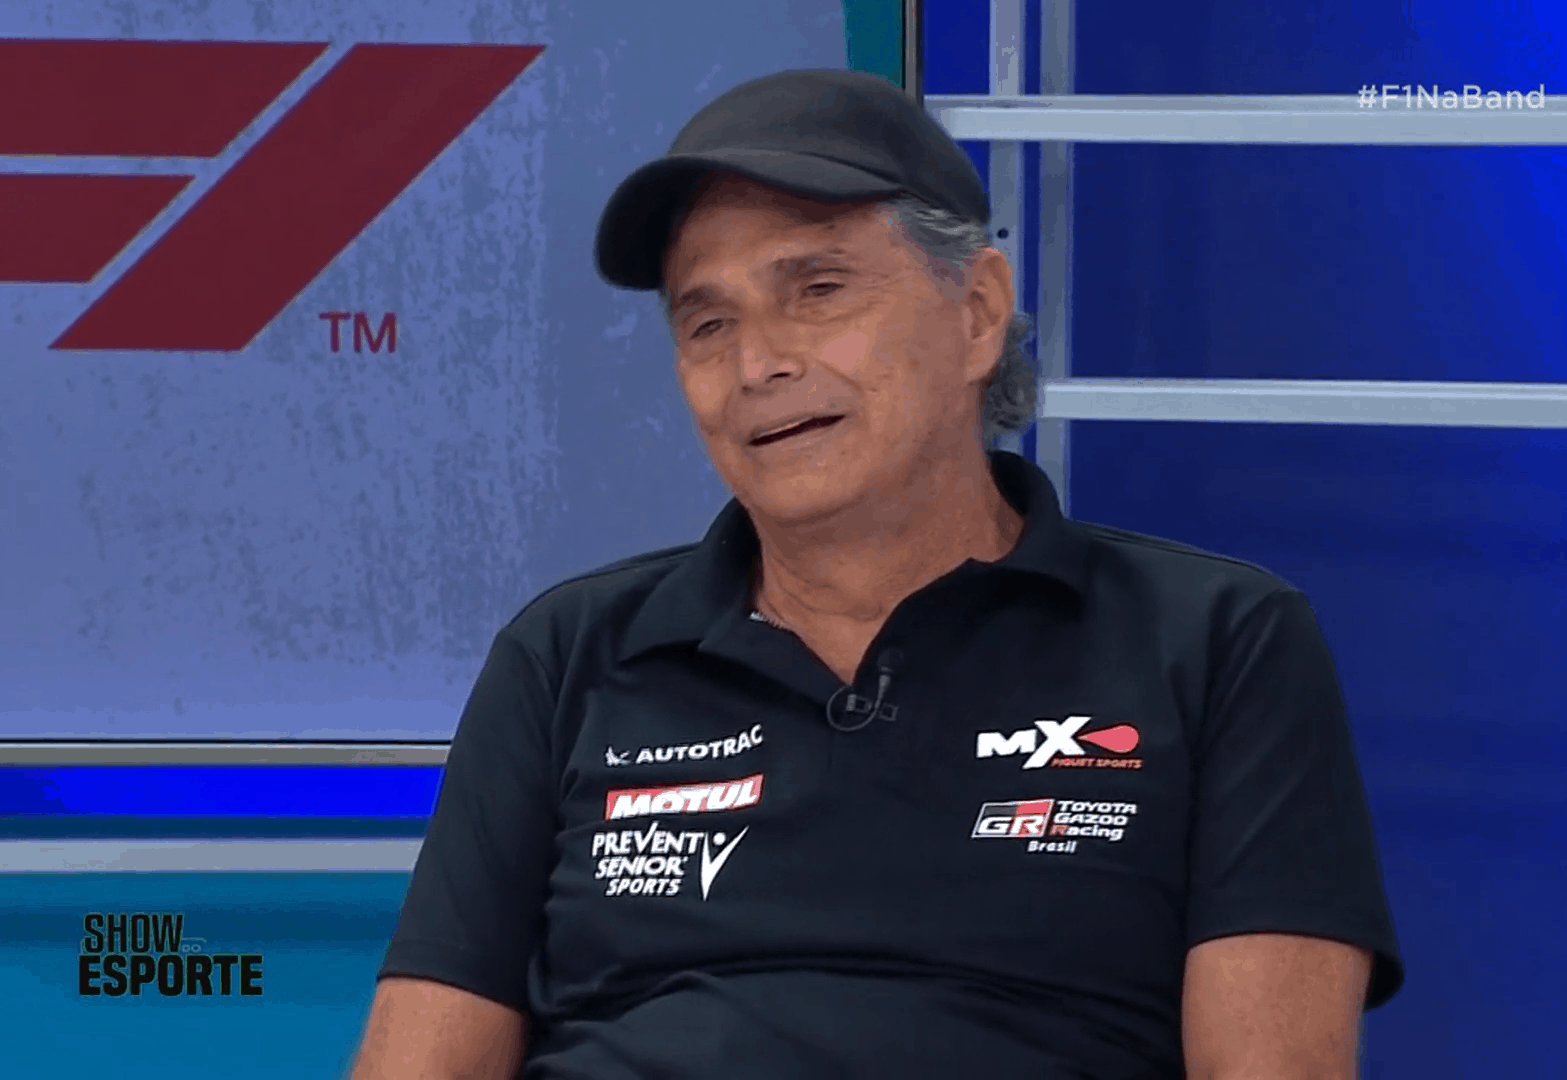 Nelson Piquet ataca novamente e dispara “Globolixo” em evento com Bolsonaro